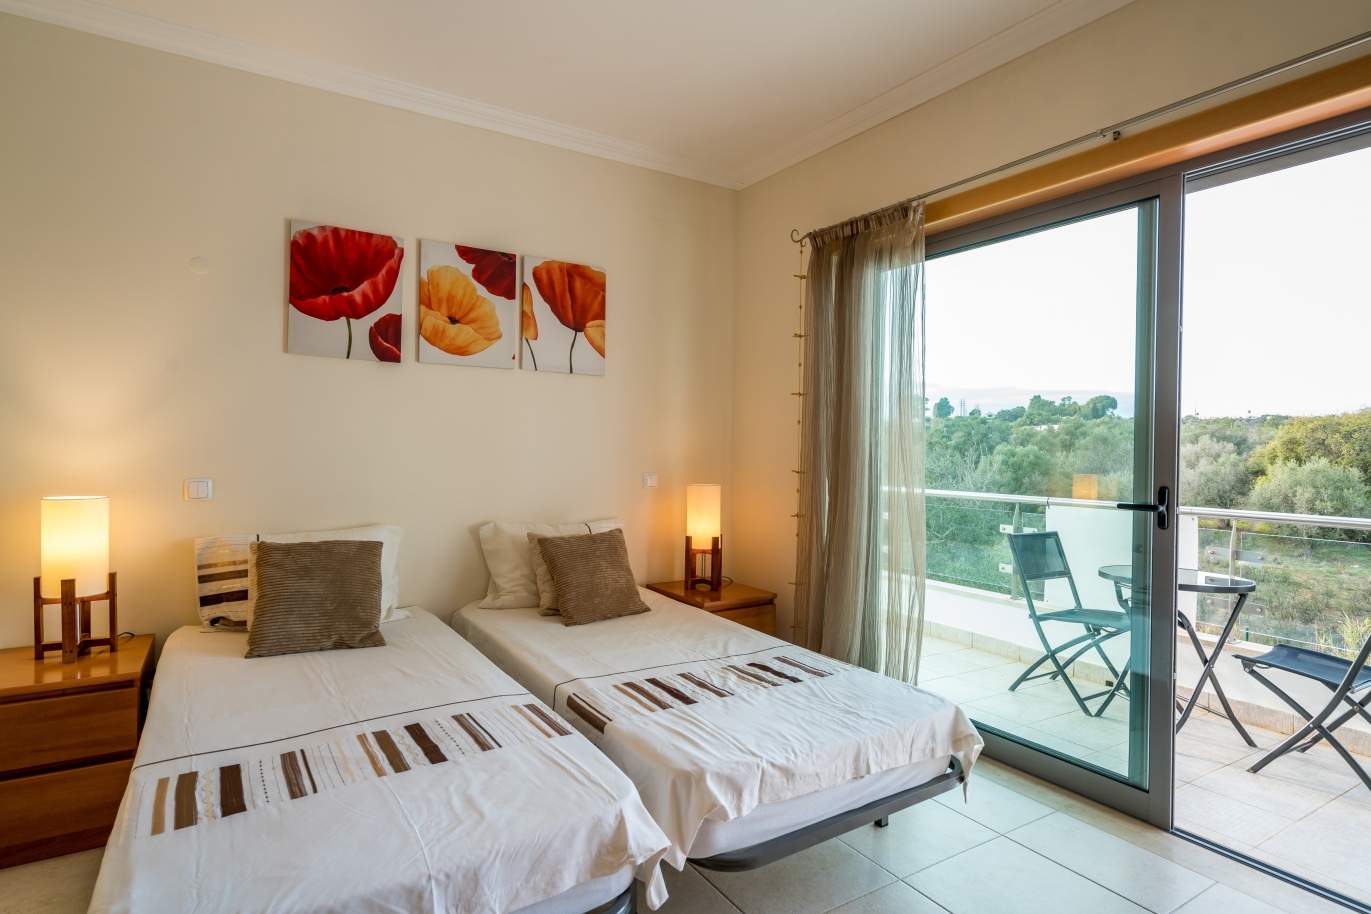 Sale of villa in private condominium in Albufeira, Algarve, Portugal_126886